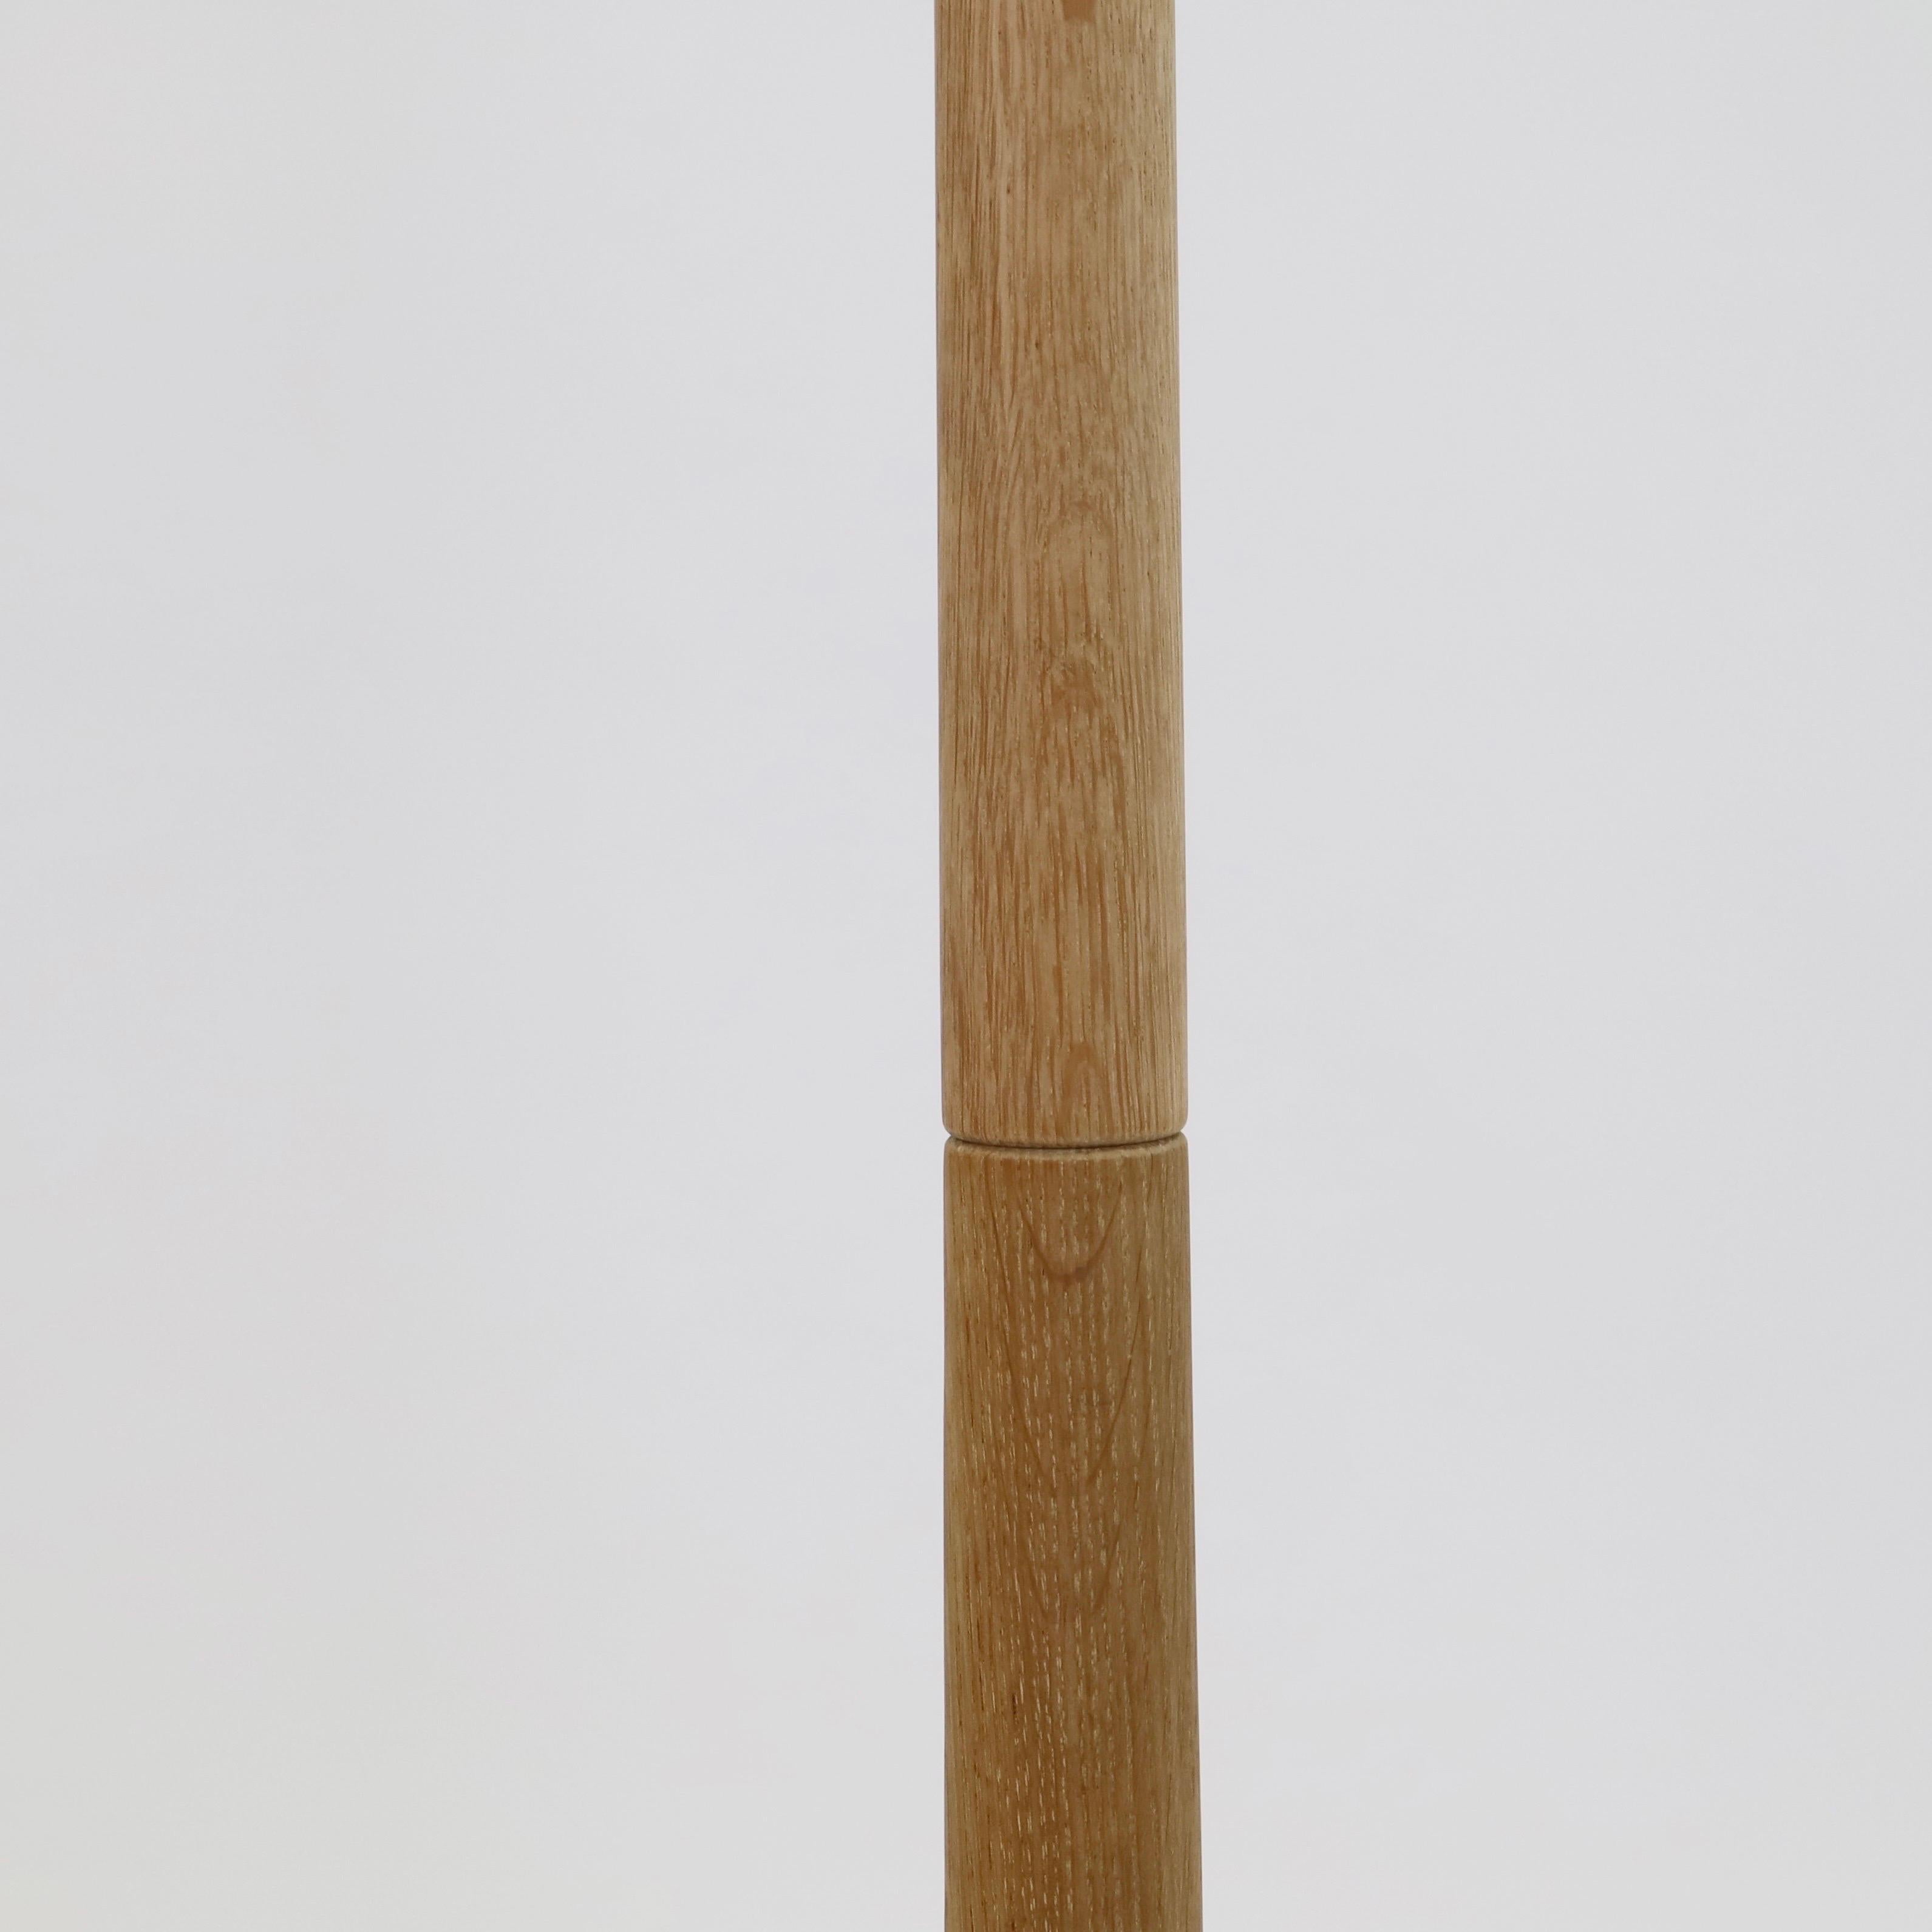 Danish Modern oak wood floor lamp by Lisbeth Brams, 1960s, Denmark For Sale 4